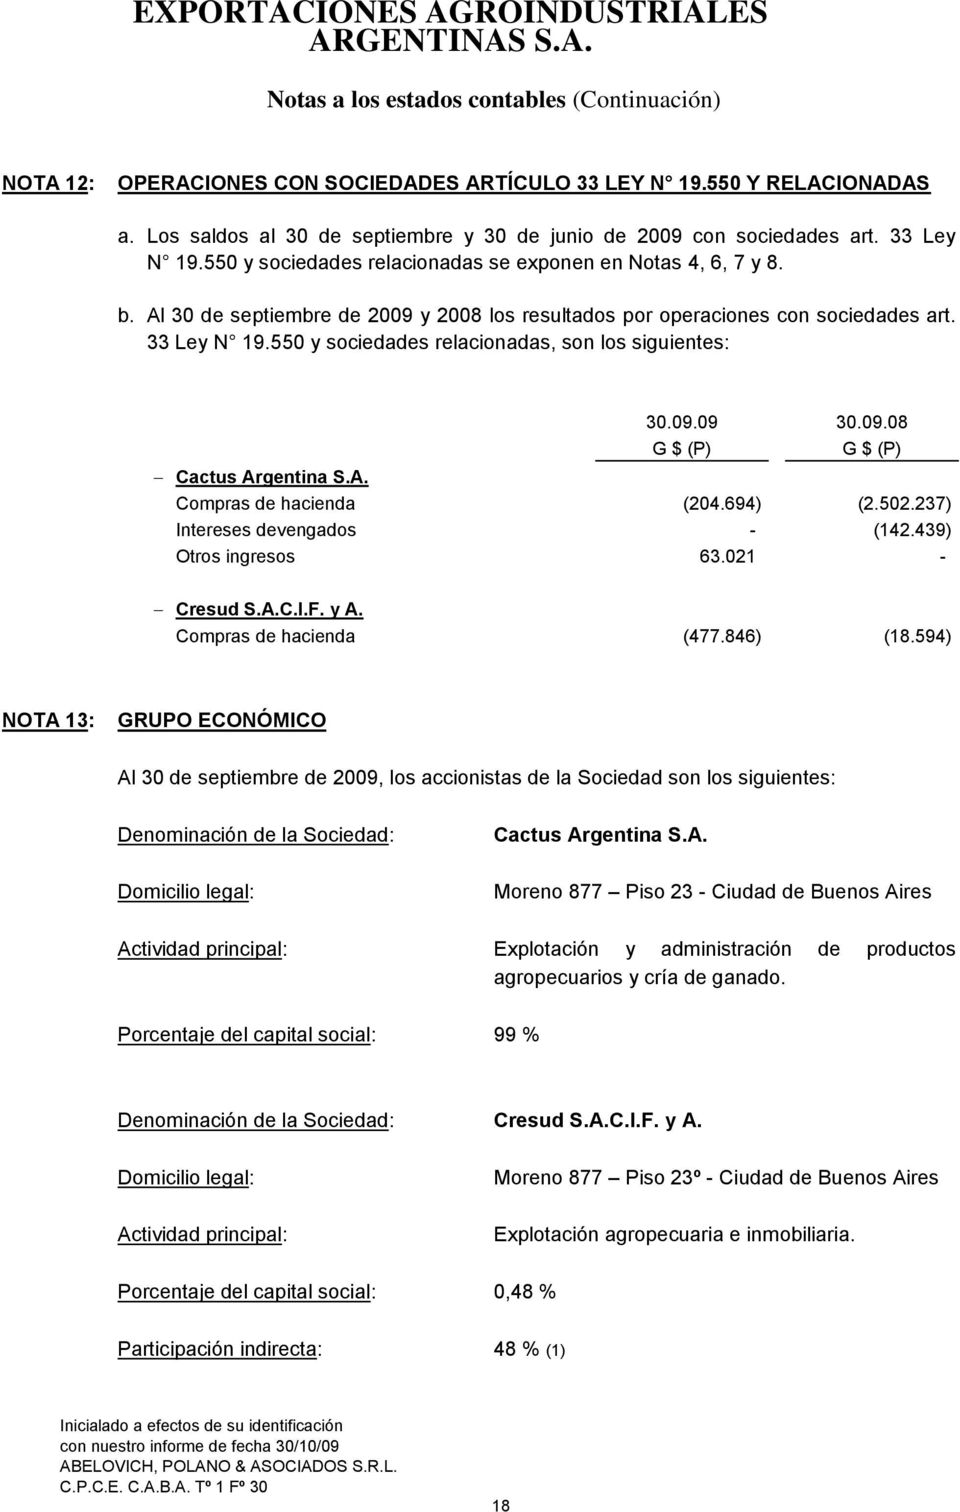 550 y sociedades relacionadas, son los siguientes: G (P) 30.09.08 G (P) Cactus Argentina S.A. Compras de hacienda (204.694) (2.502.237) Intereses devengados - (142.439) Otros ingresos 63.